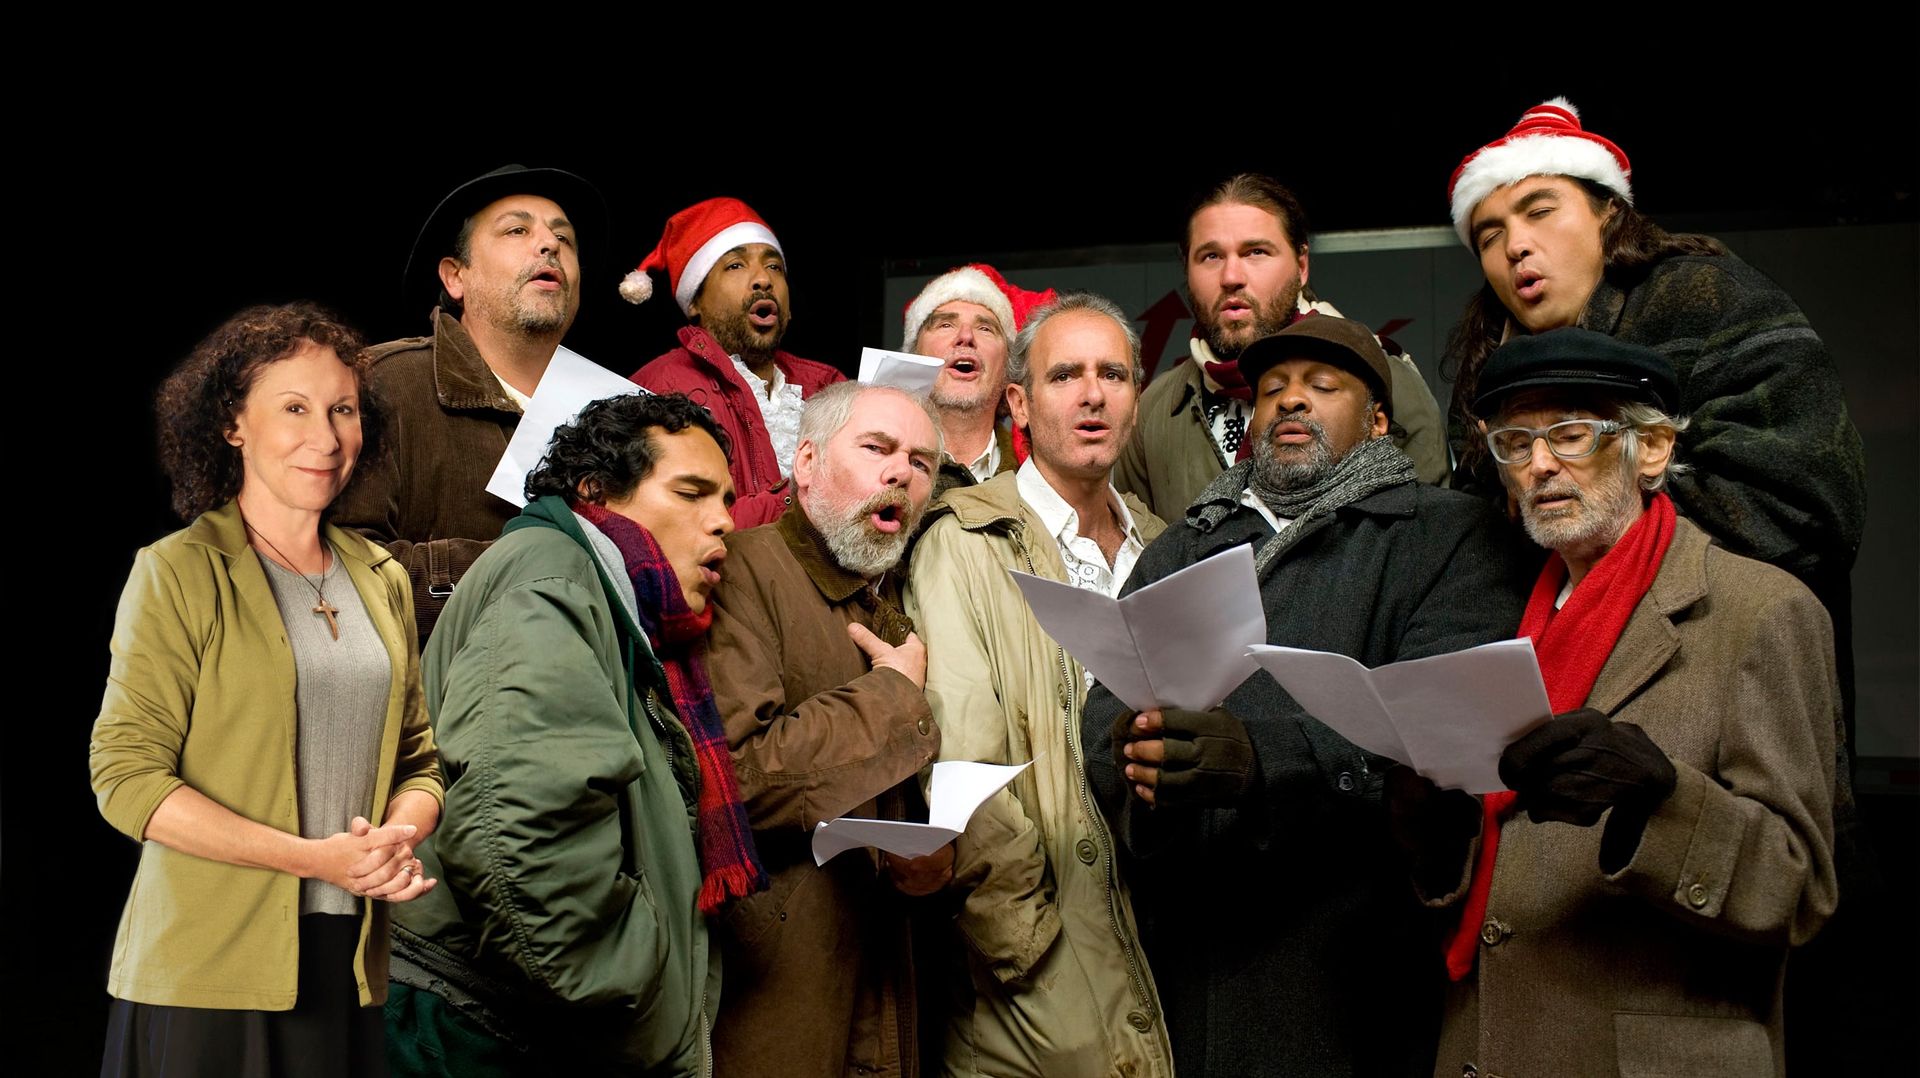 The Christmas Choir Backdrop